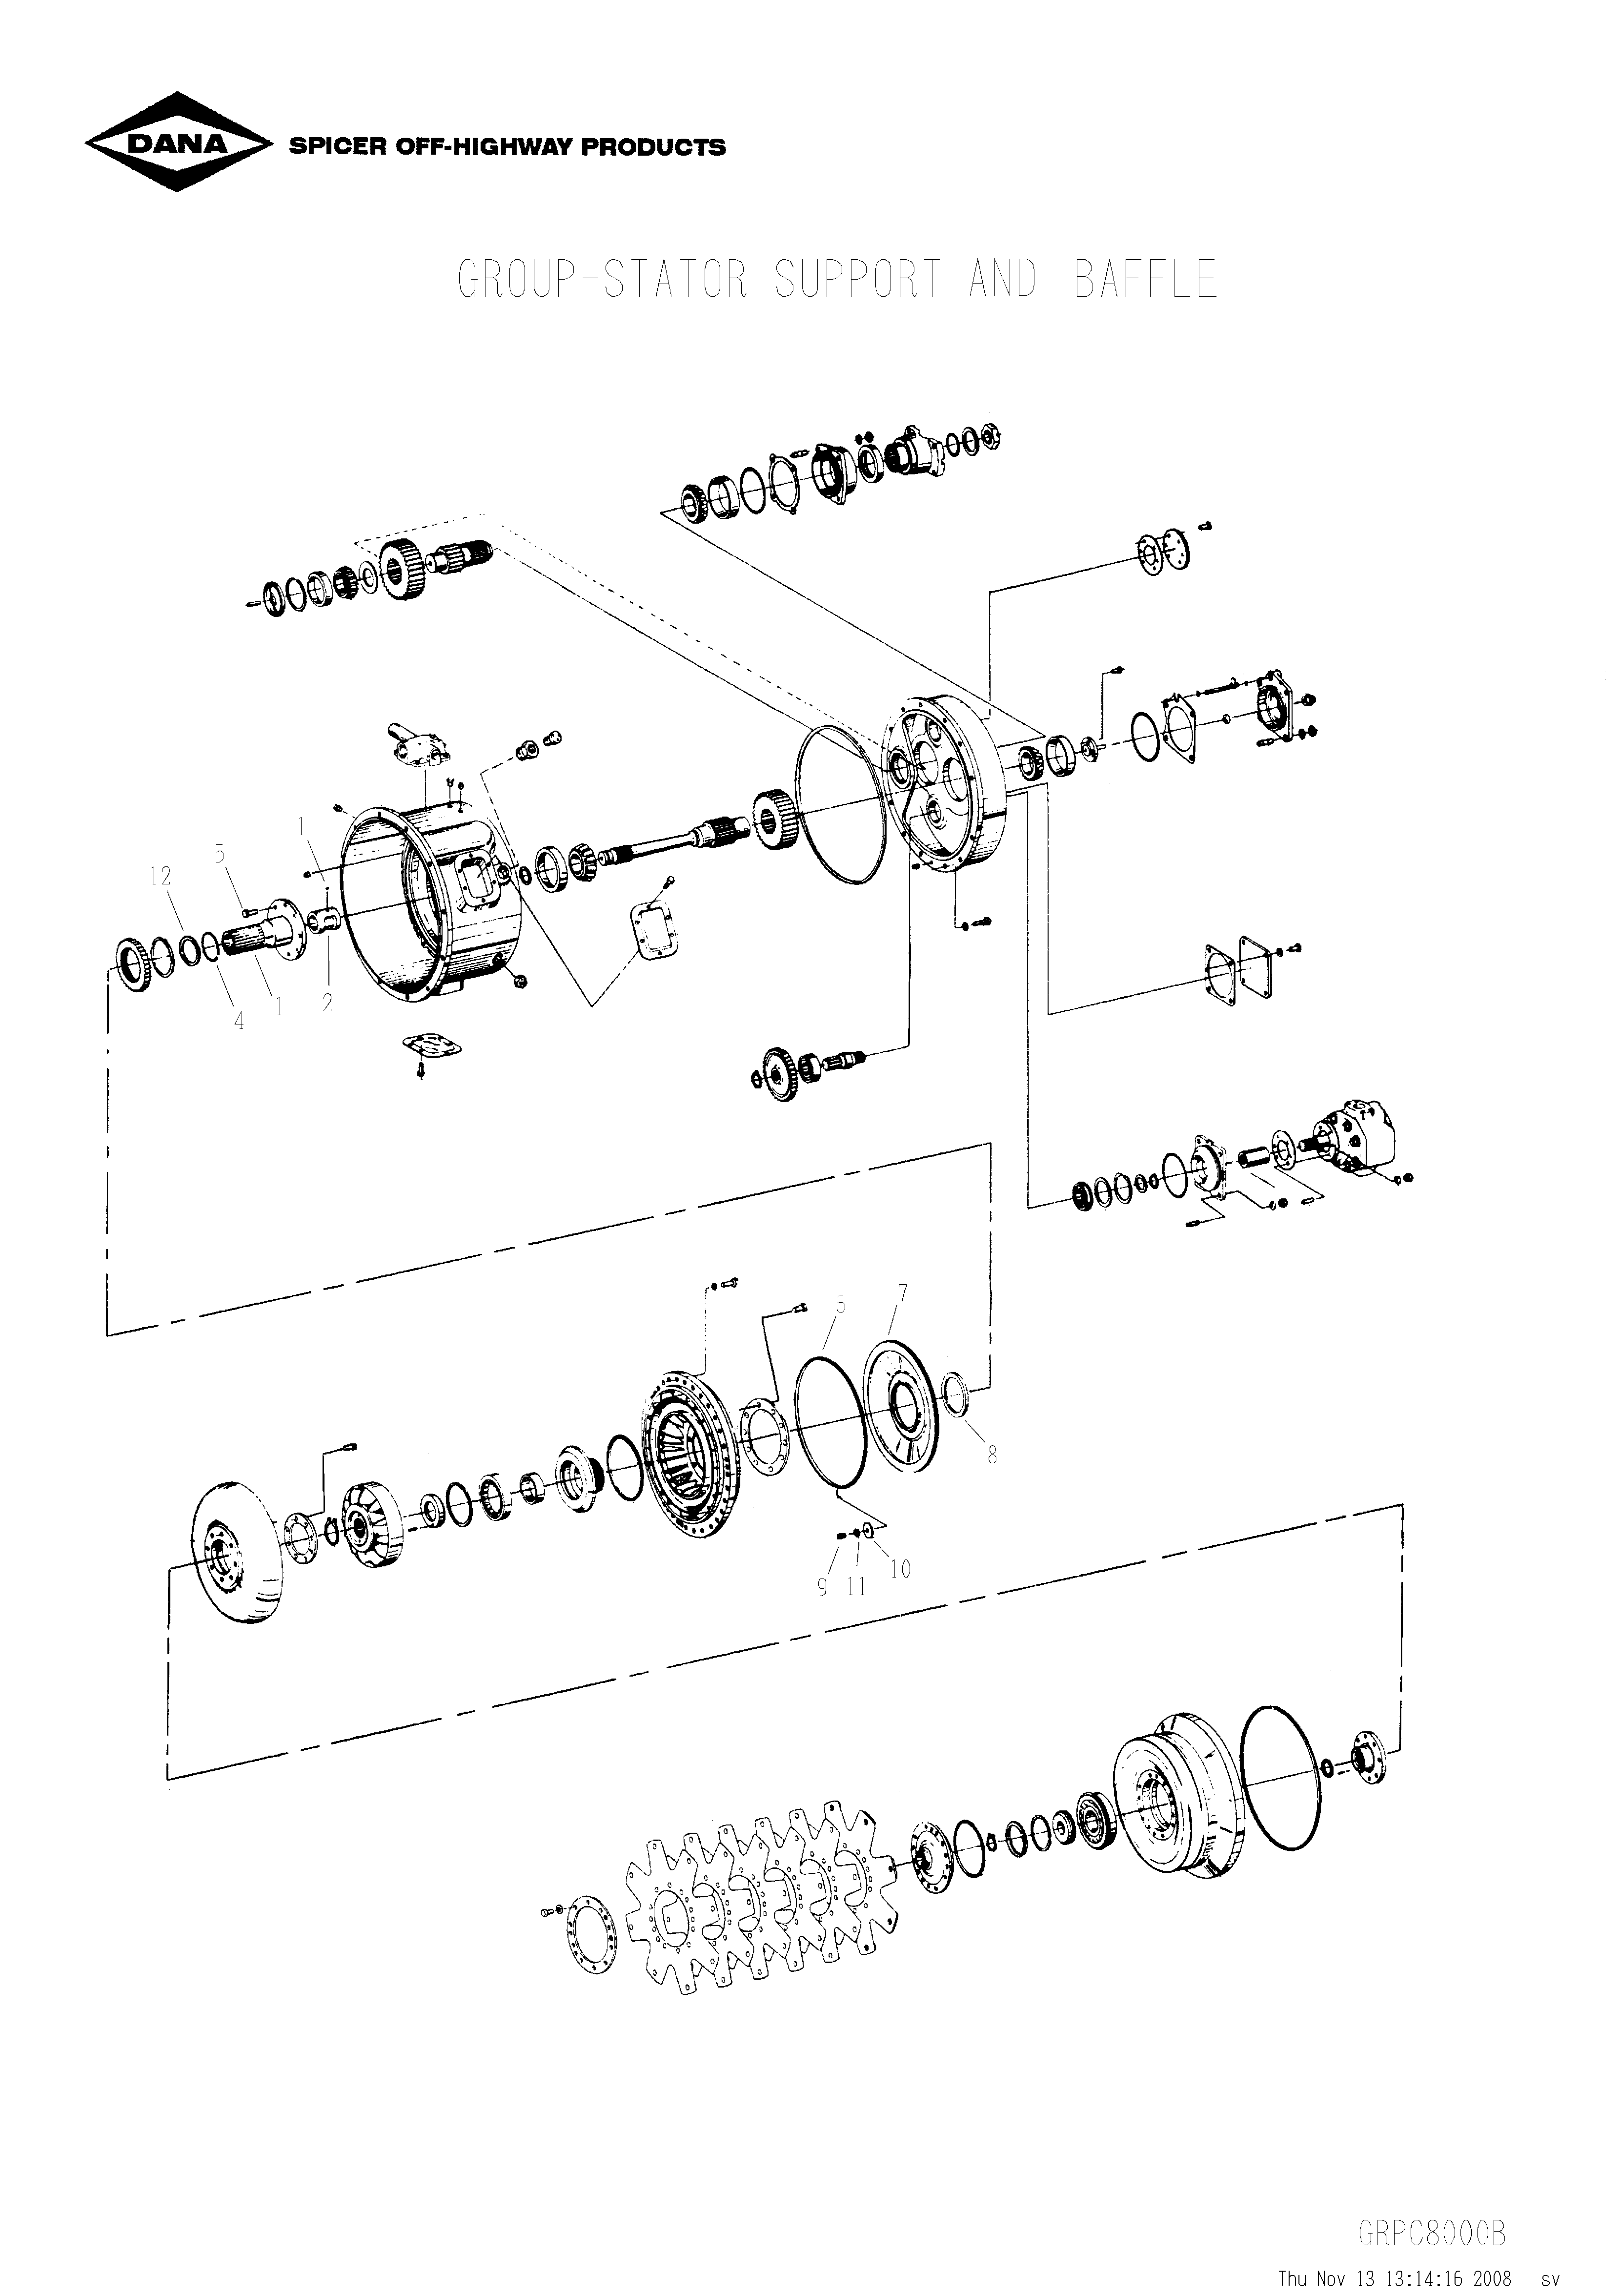 drawing for SCHOEMA, SCHOETTLER MASCHINENFABRIK K24.000313 - O-RING (figure 1)